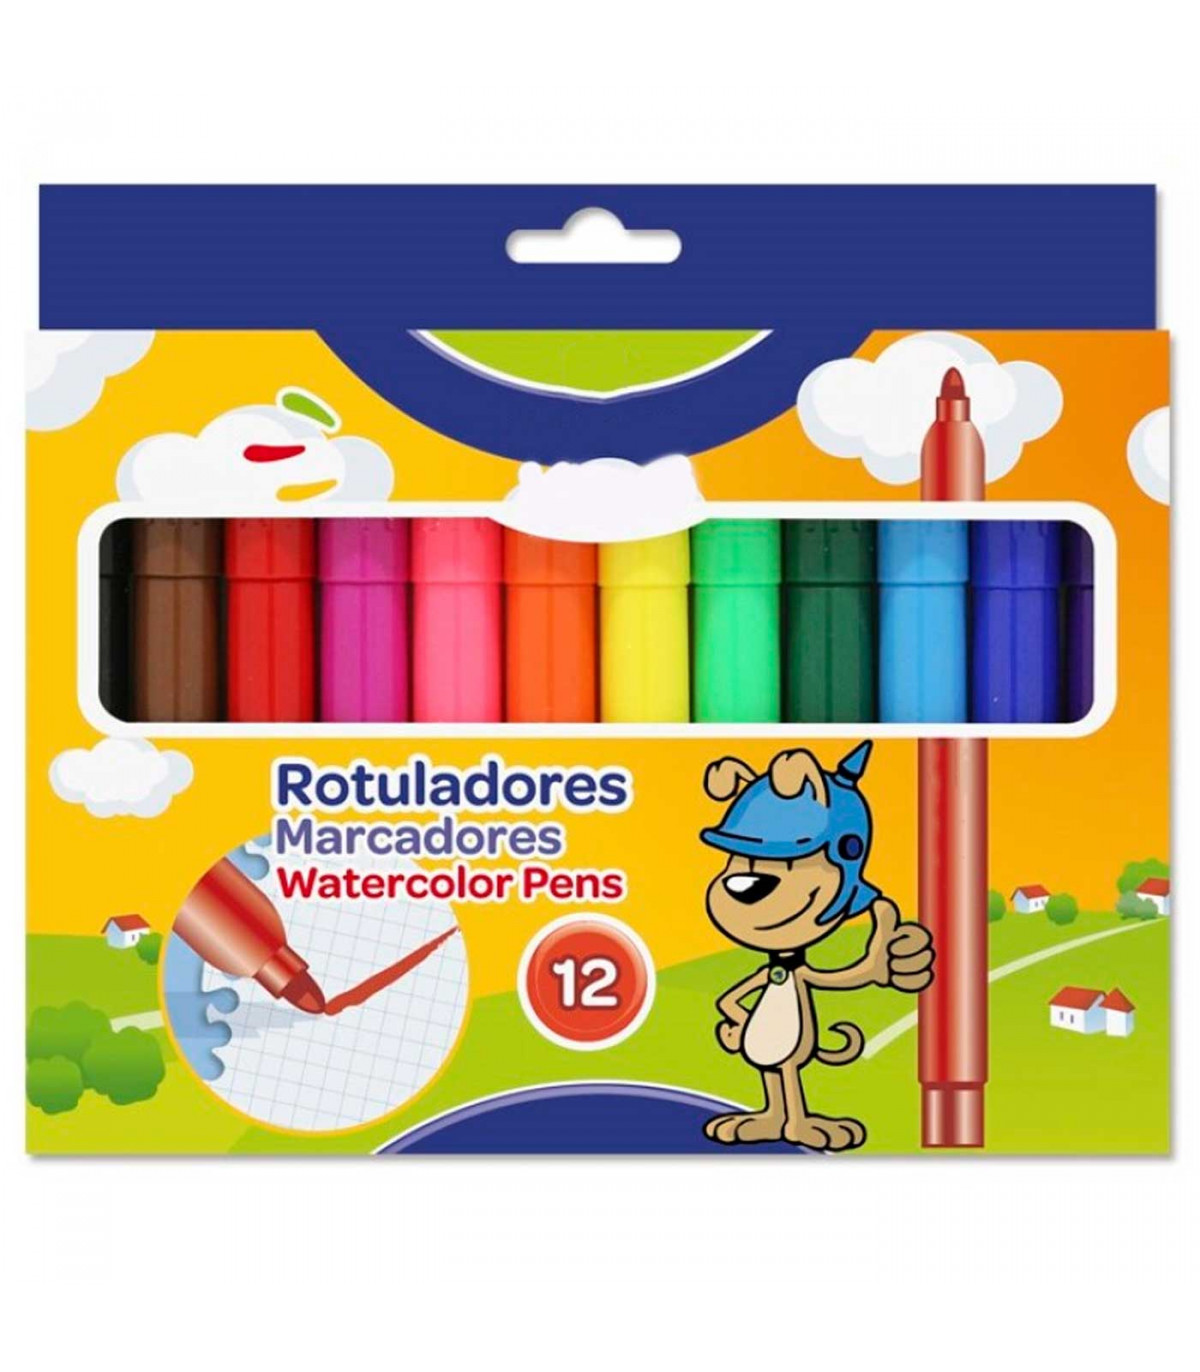  Rotuladores para colorear alimentos, 12 marcadores